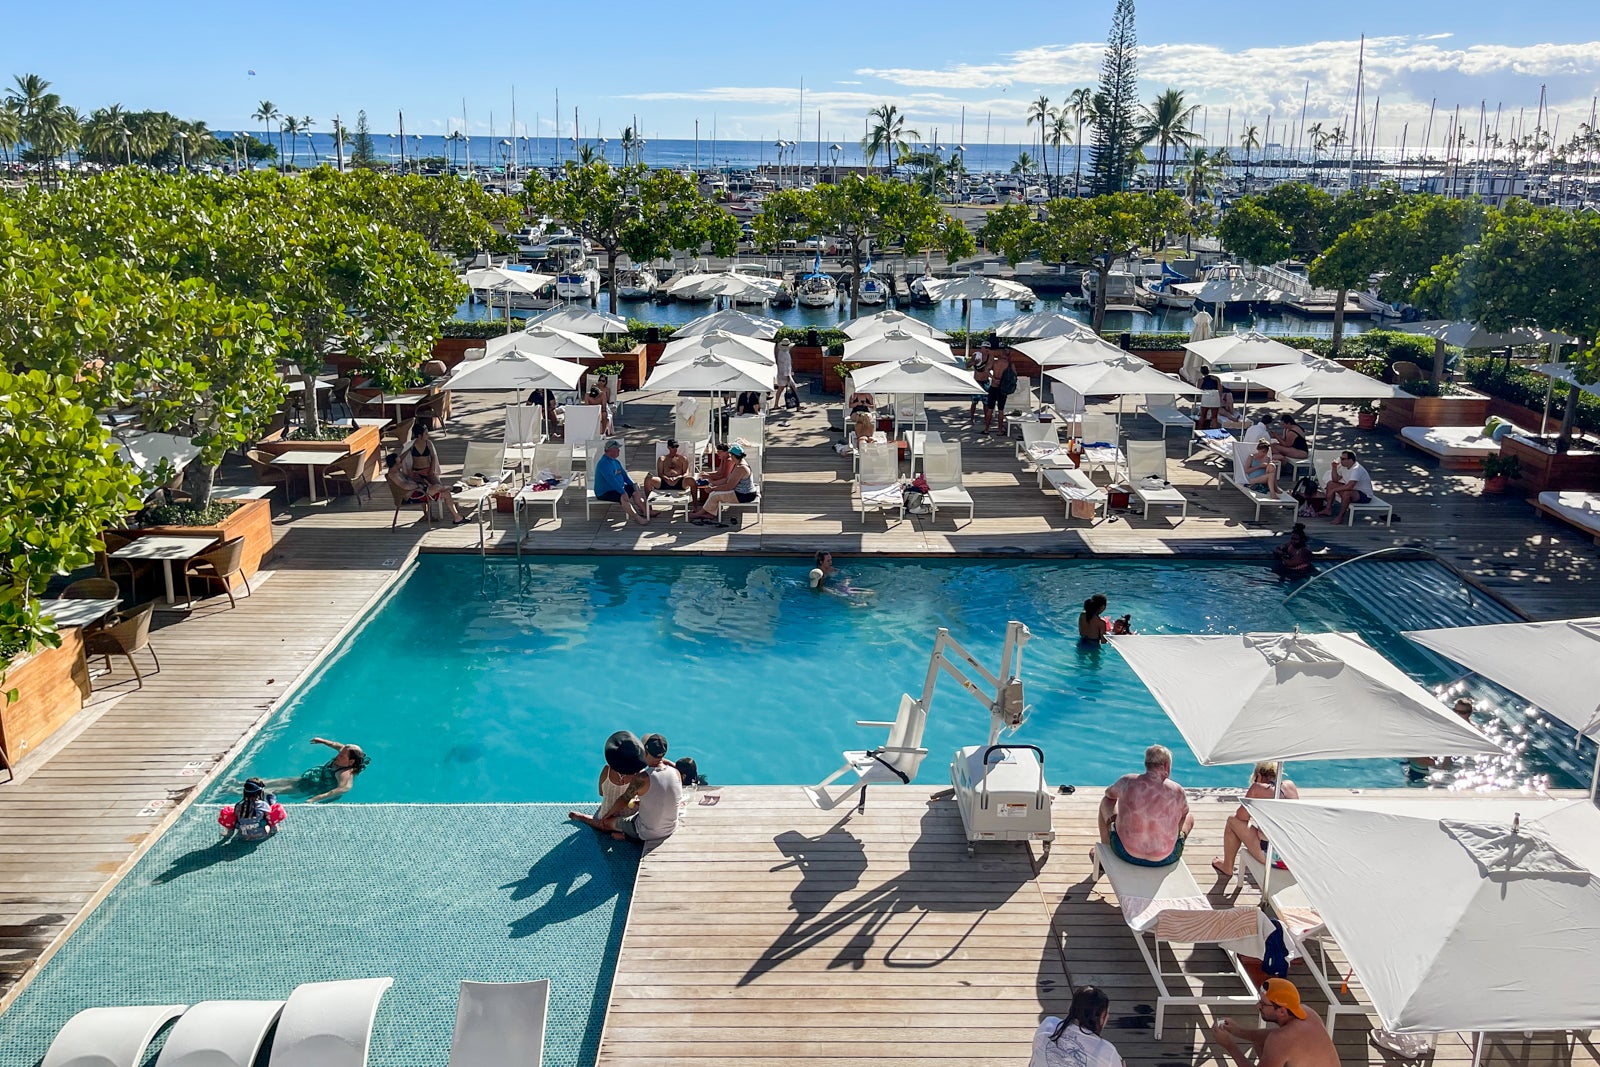 The Modern Honolulu pool